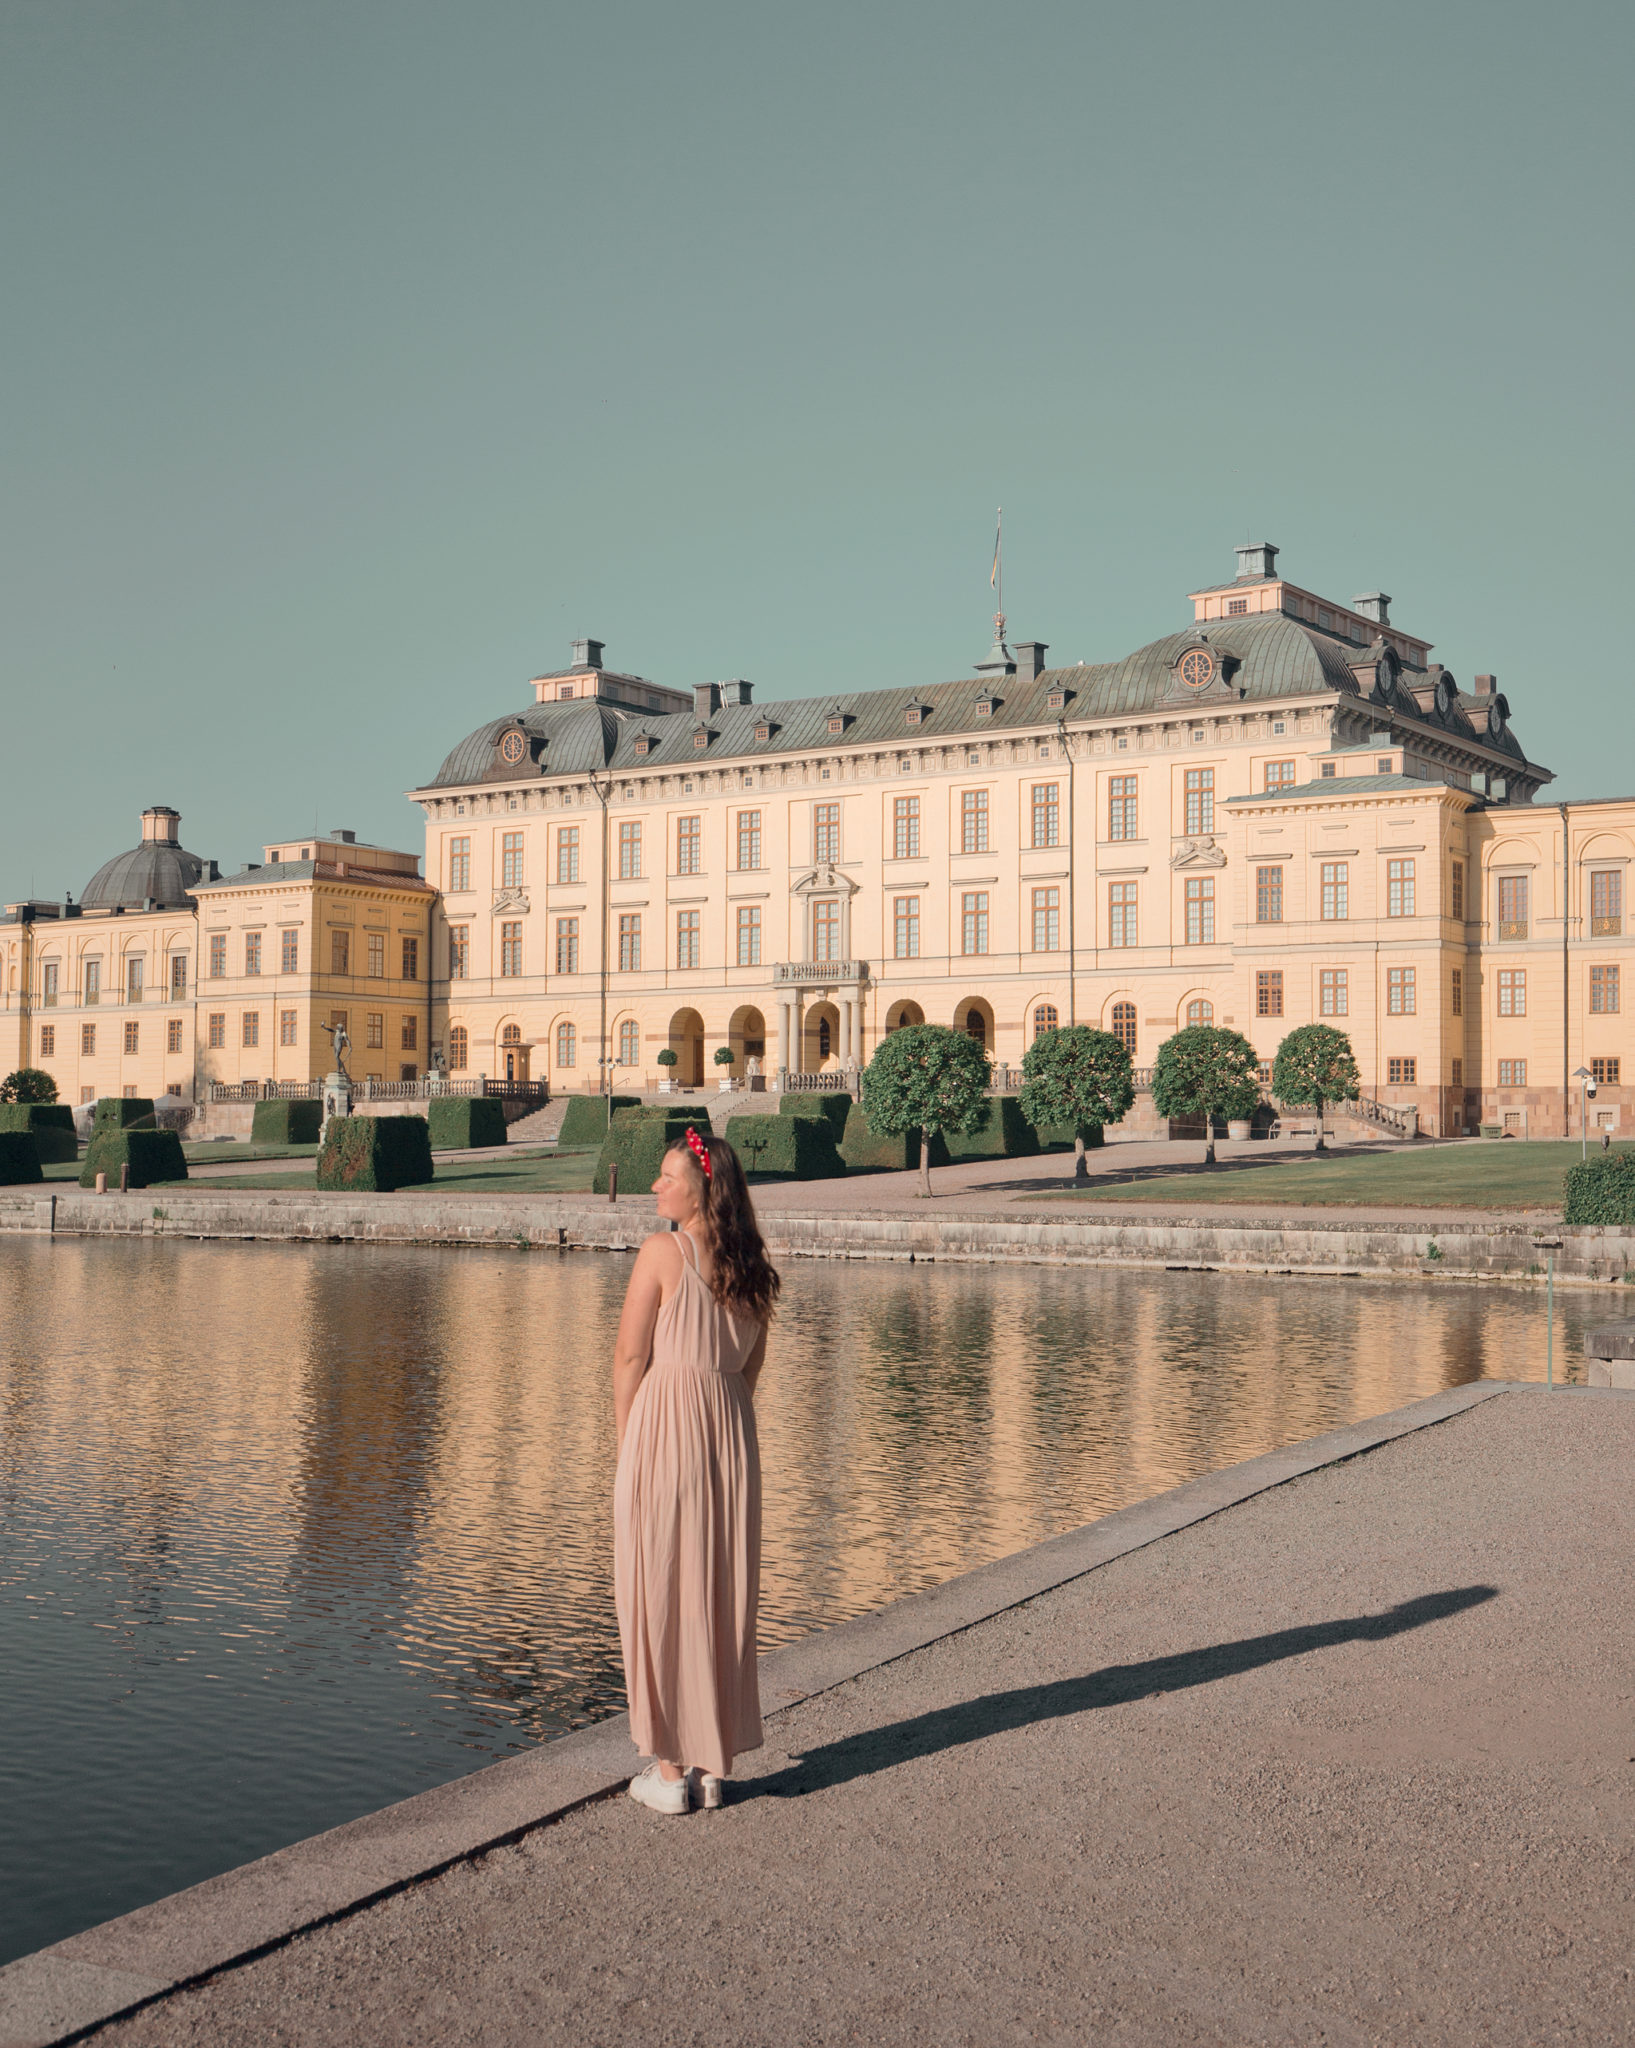 Instagramvänliga Drottningholms slott i Stockholm